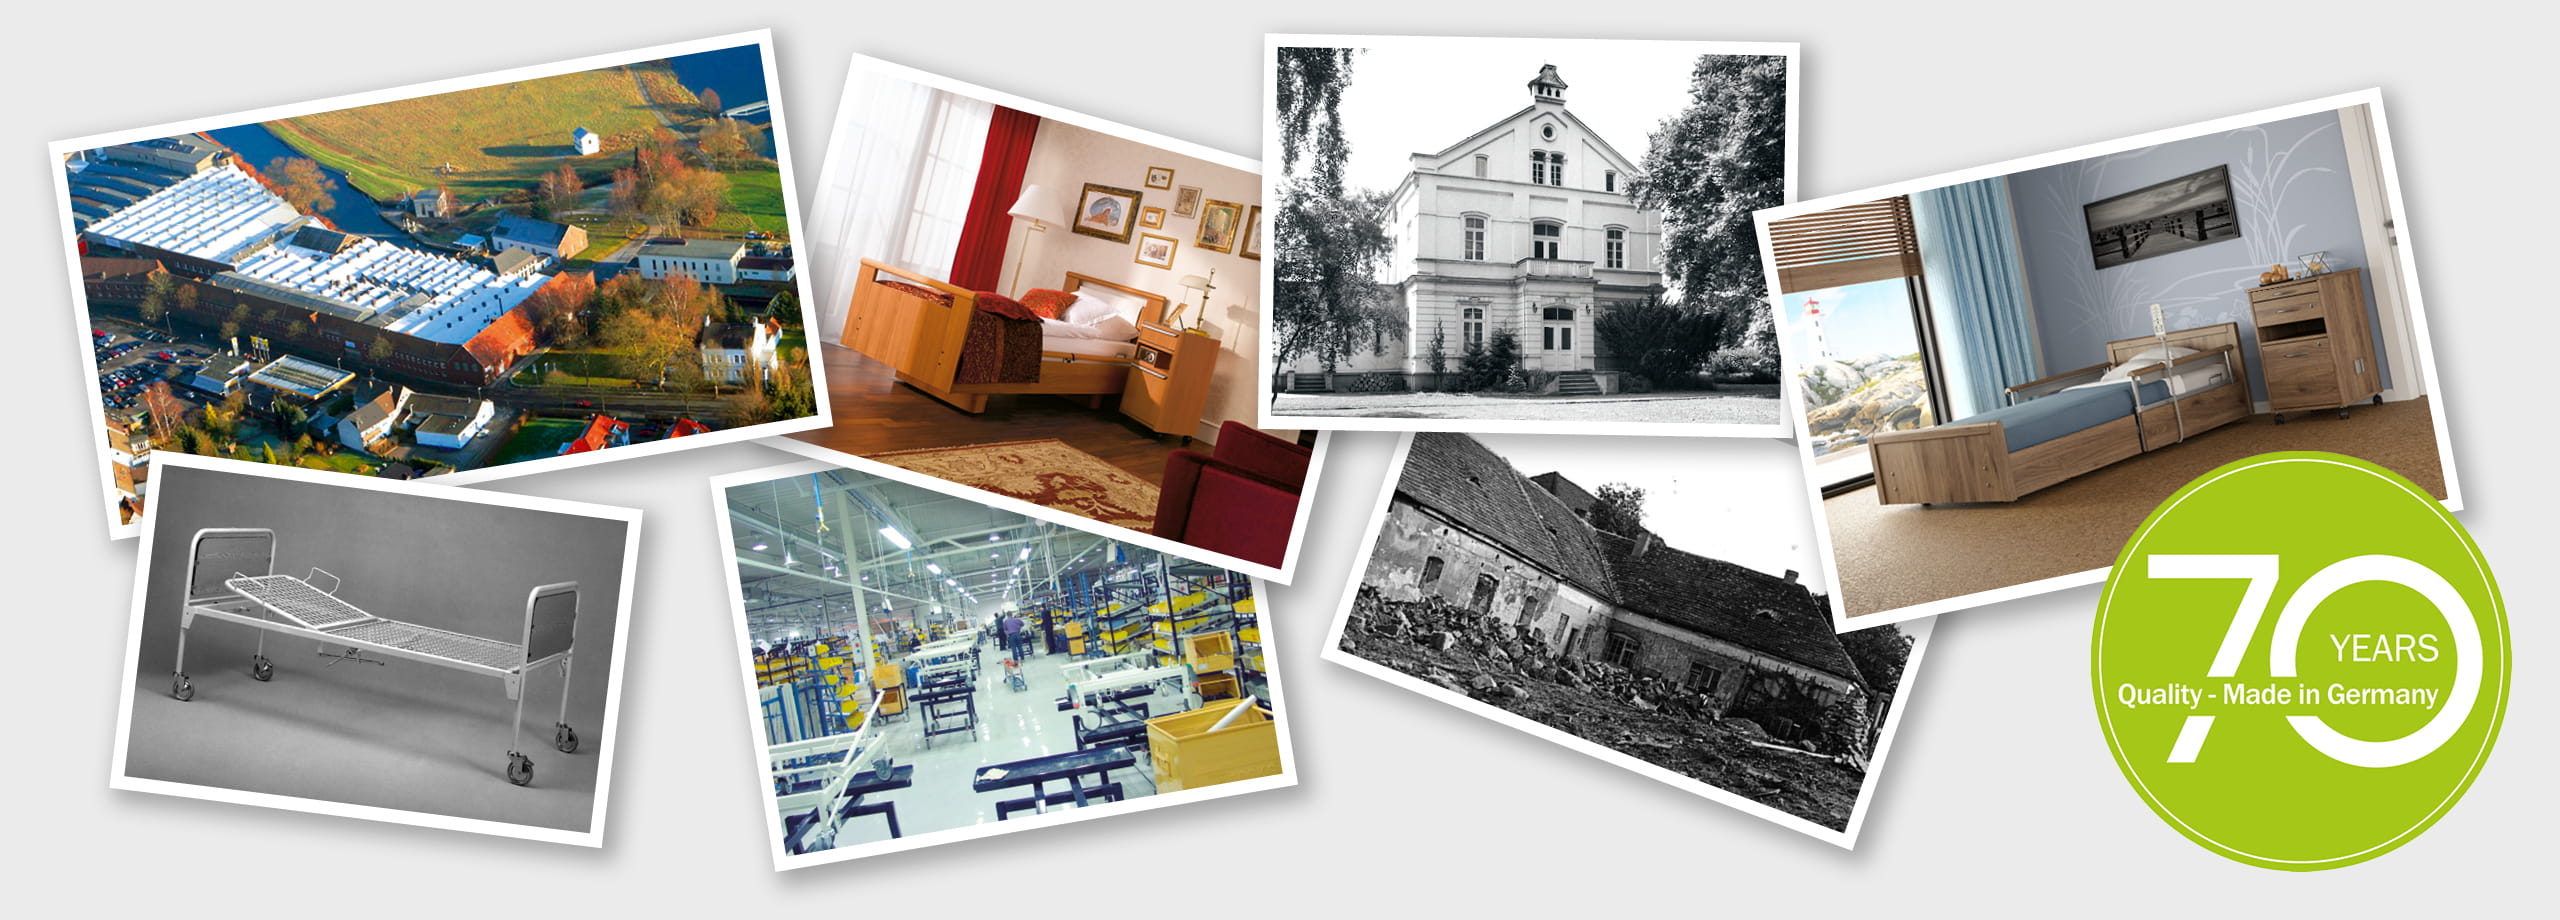 70 Jahre: Quality - Made in Germany wissner-bosserhoff feiert Geburtstag